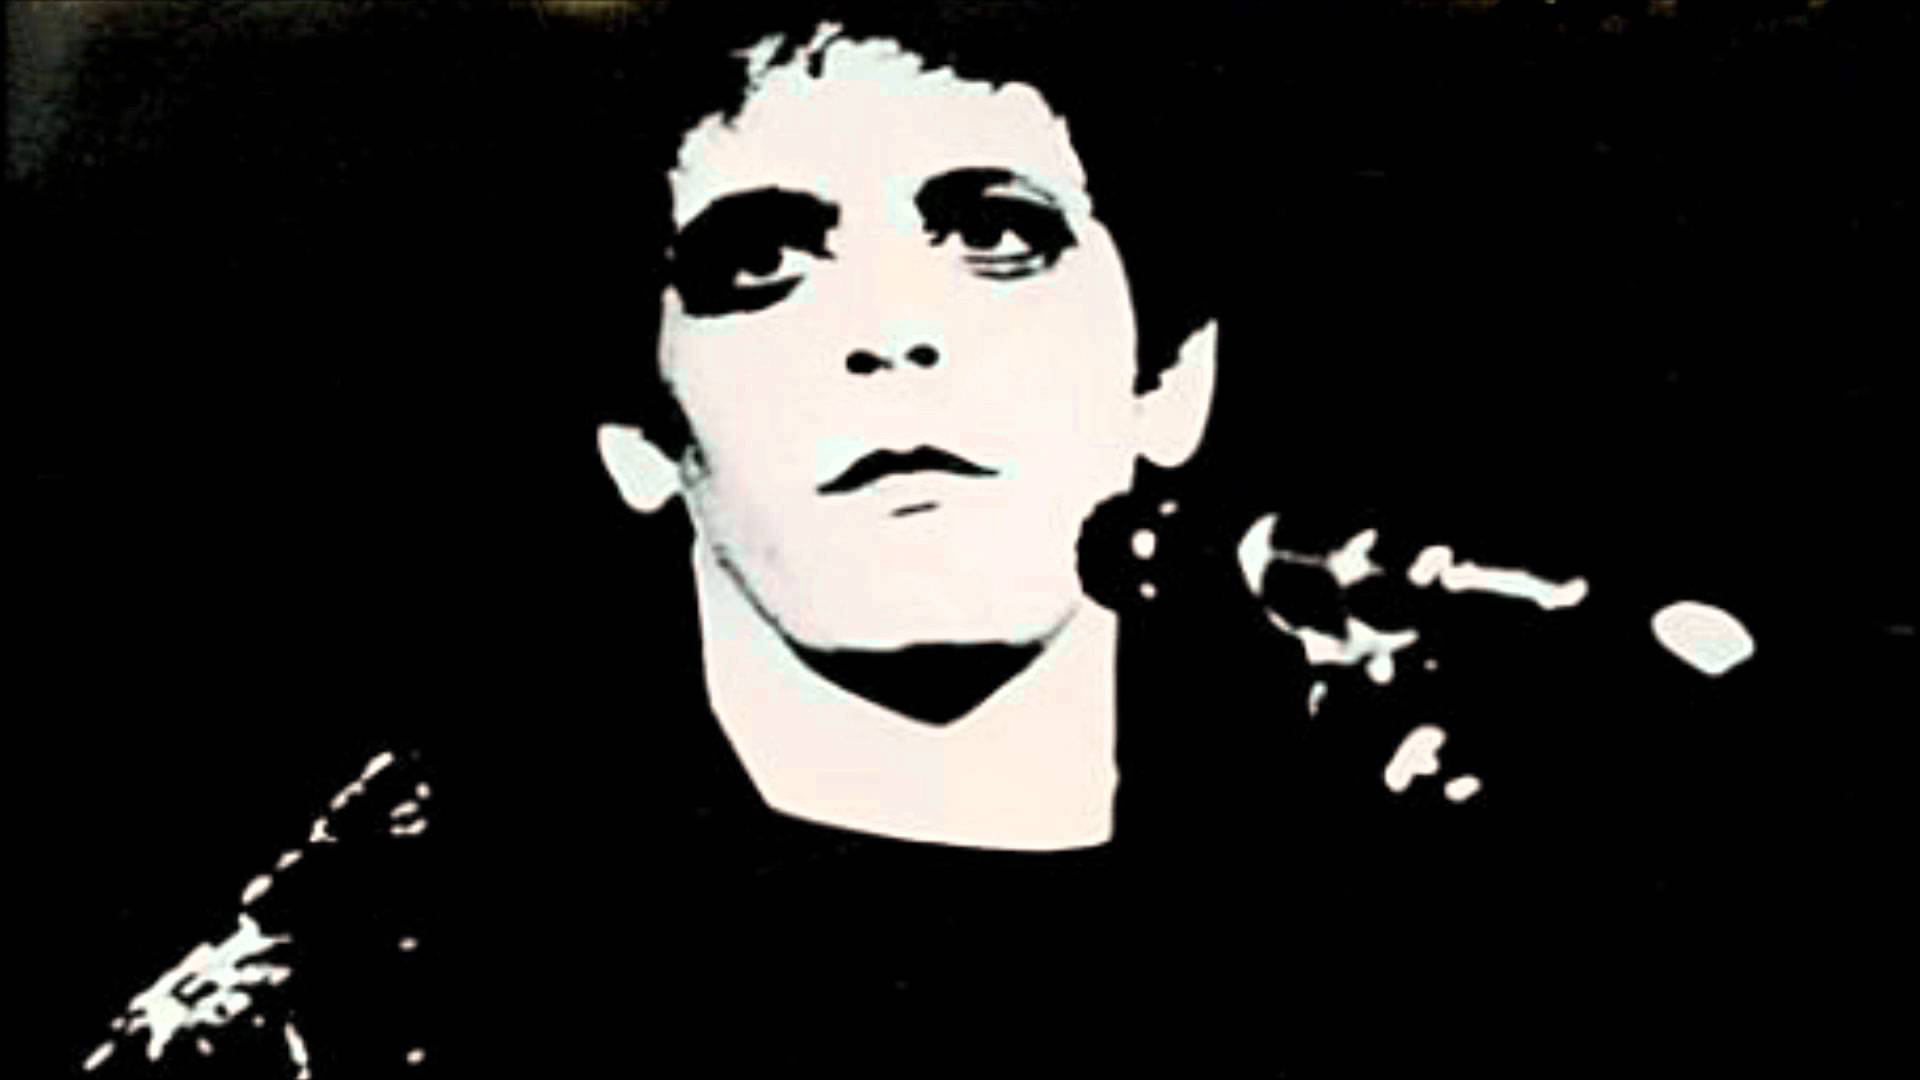 The Velvet Underground Ex-Singer Lou Reed Transformer Album Cover Wallpaper